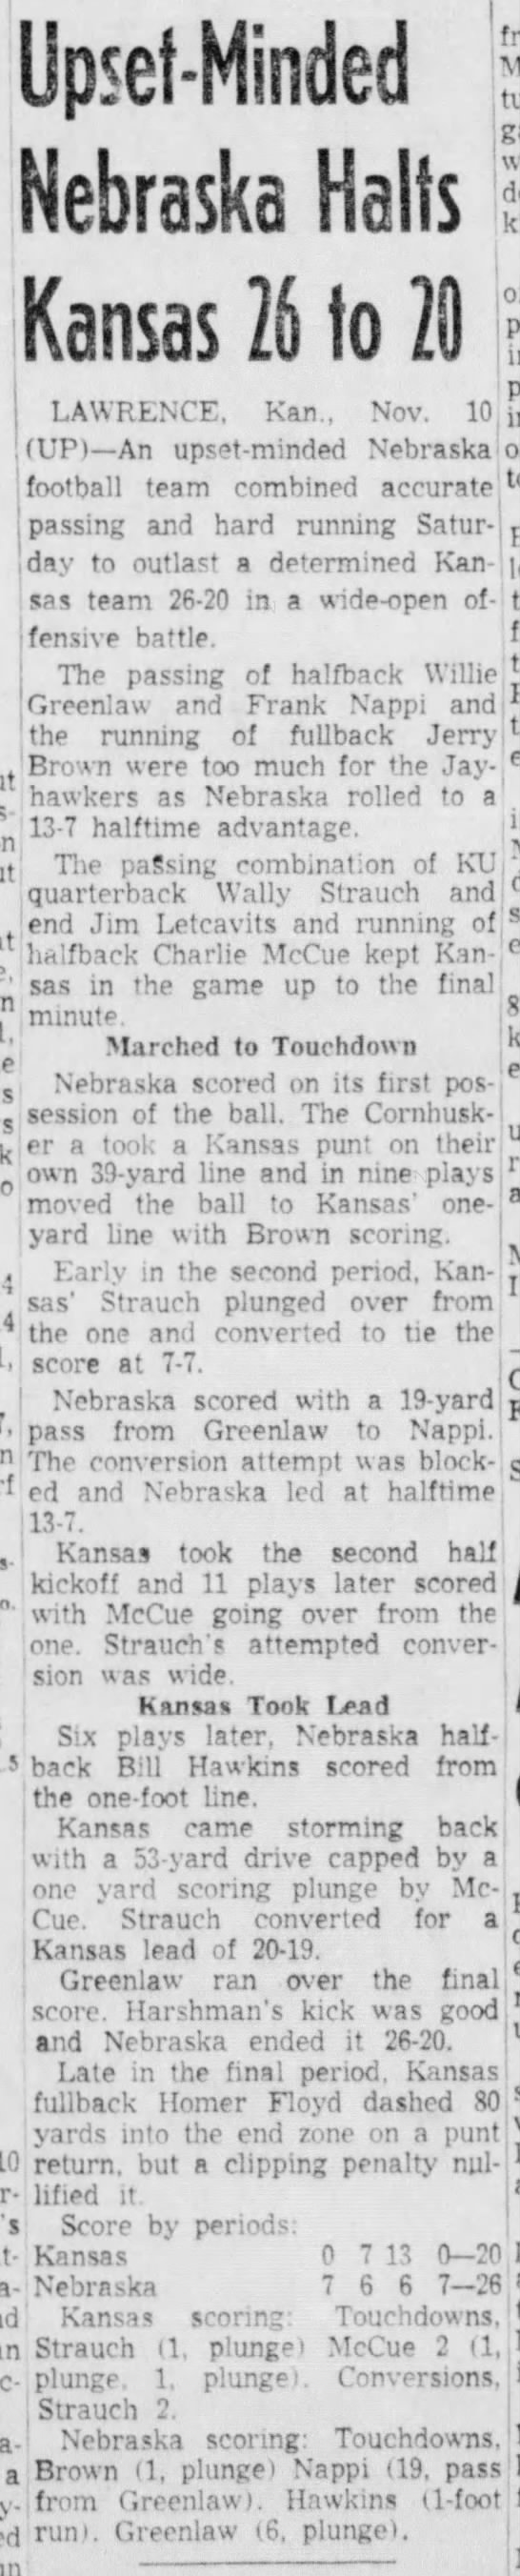 1956 Nebraska-Kansas football UP - 